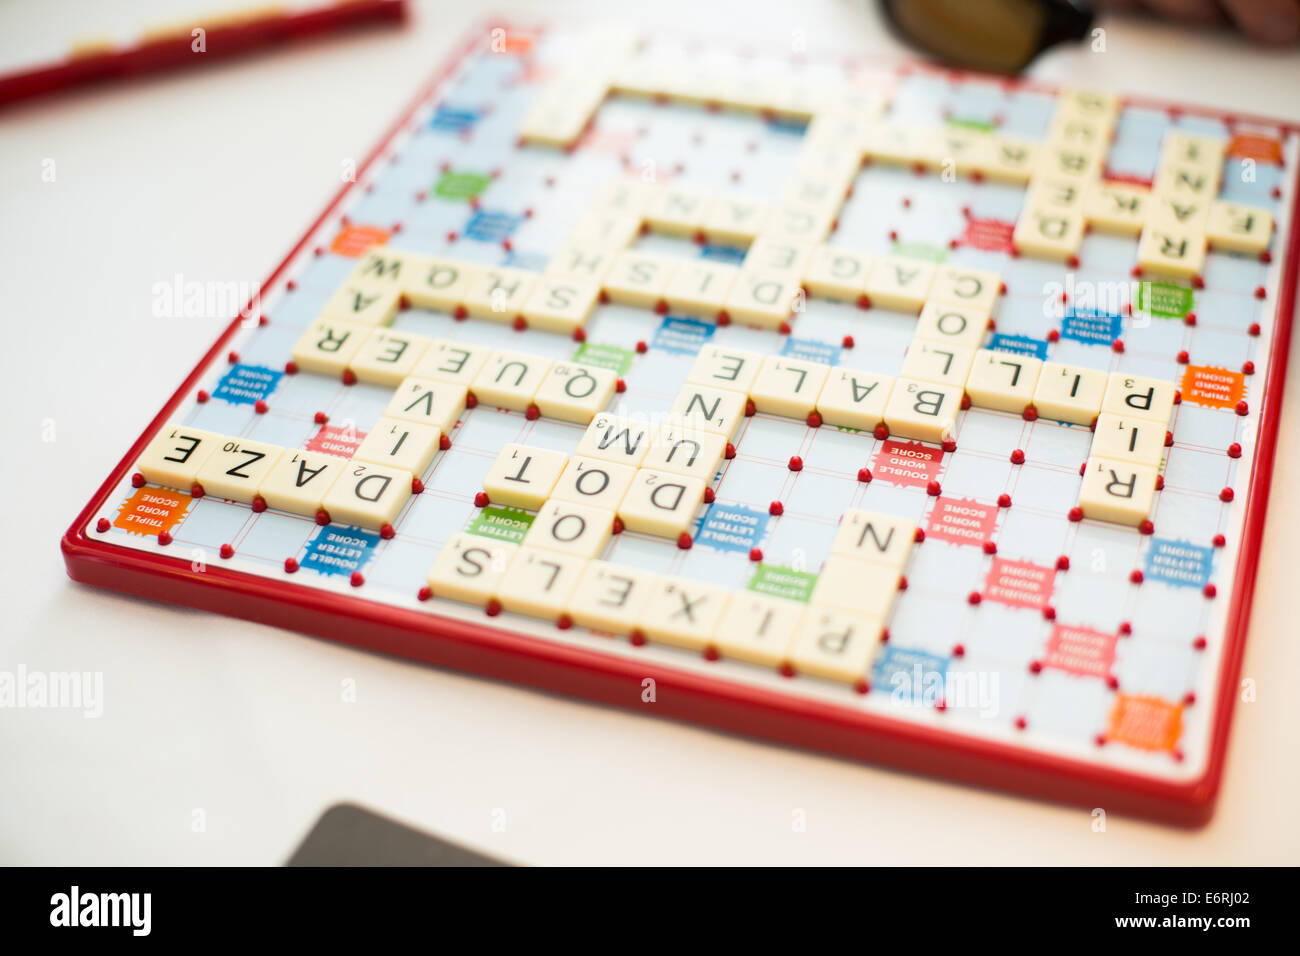 Una imagen de un tablero de Scrabble casi lleno de palabras Foto de stock